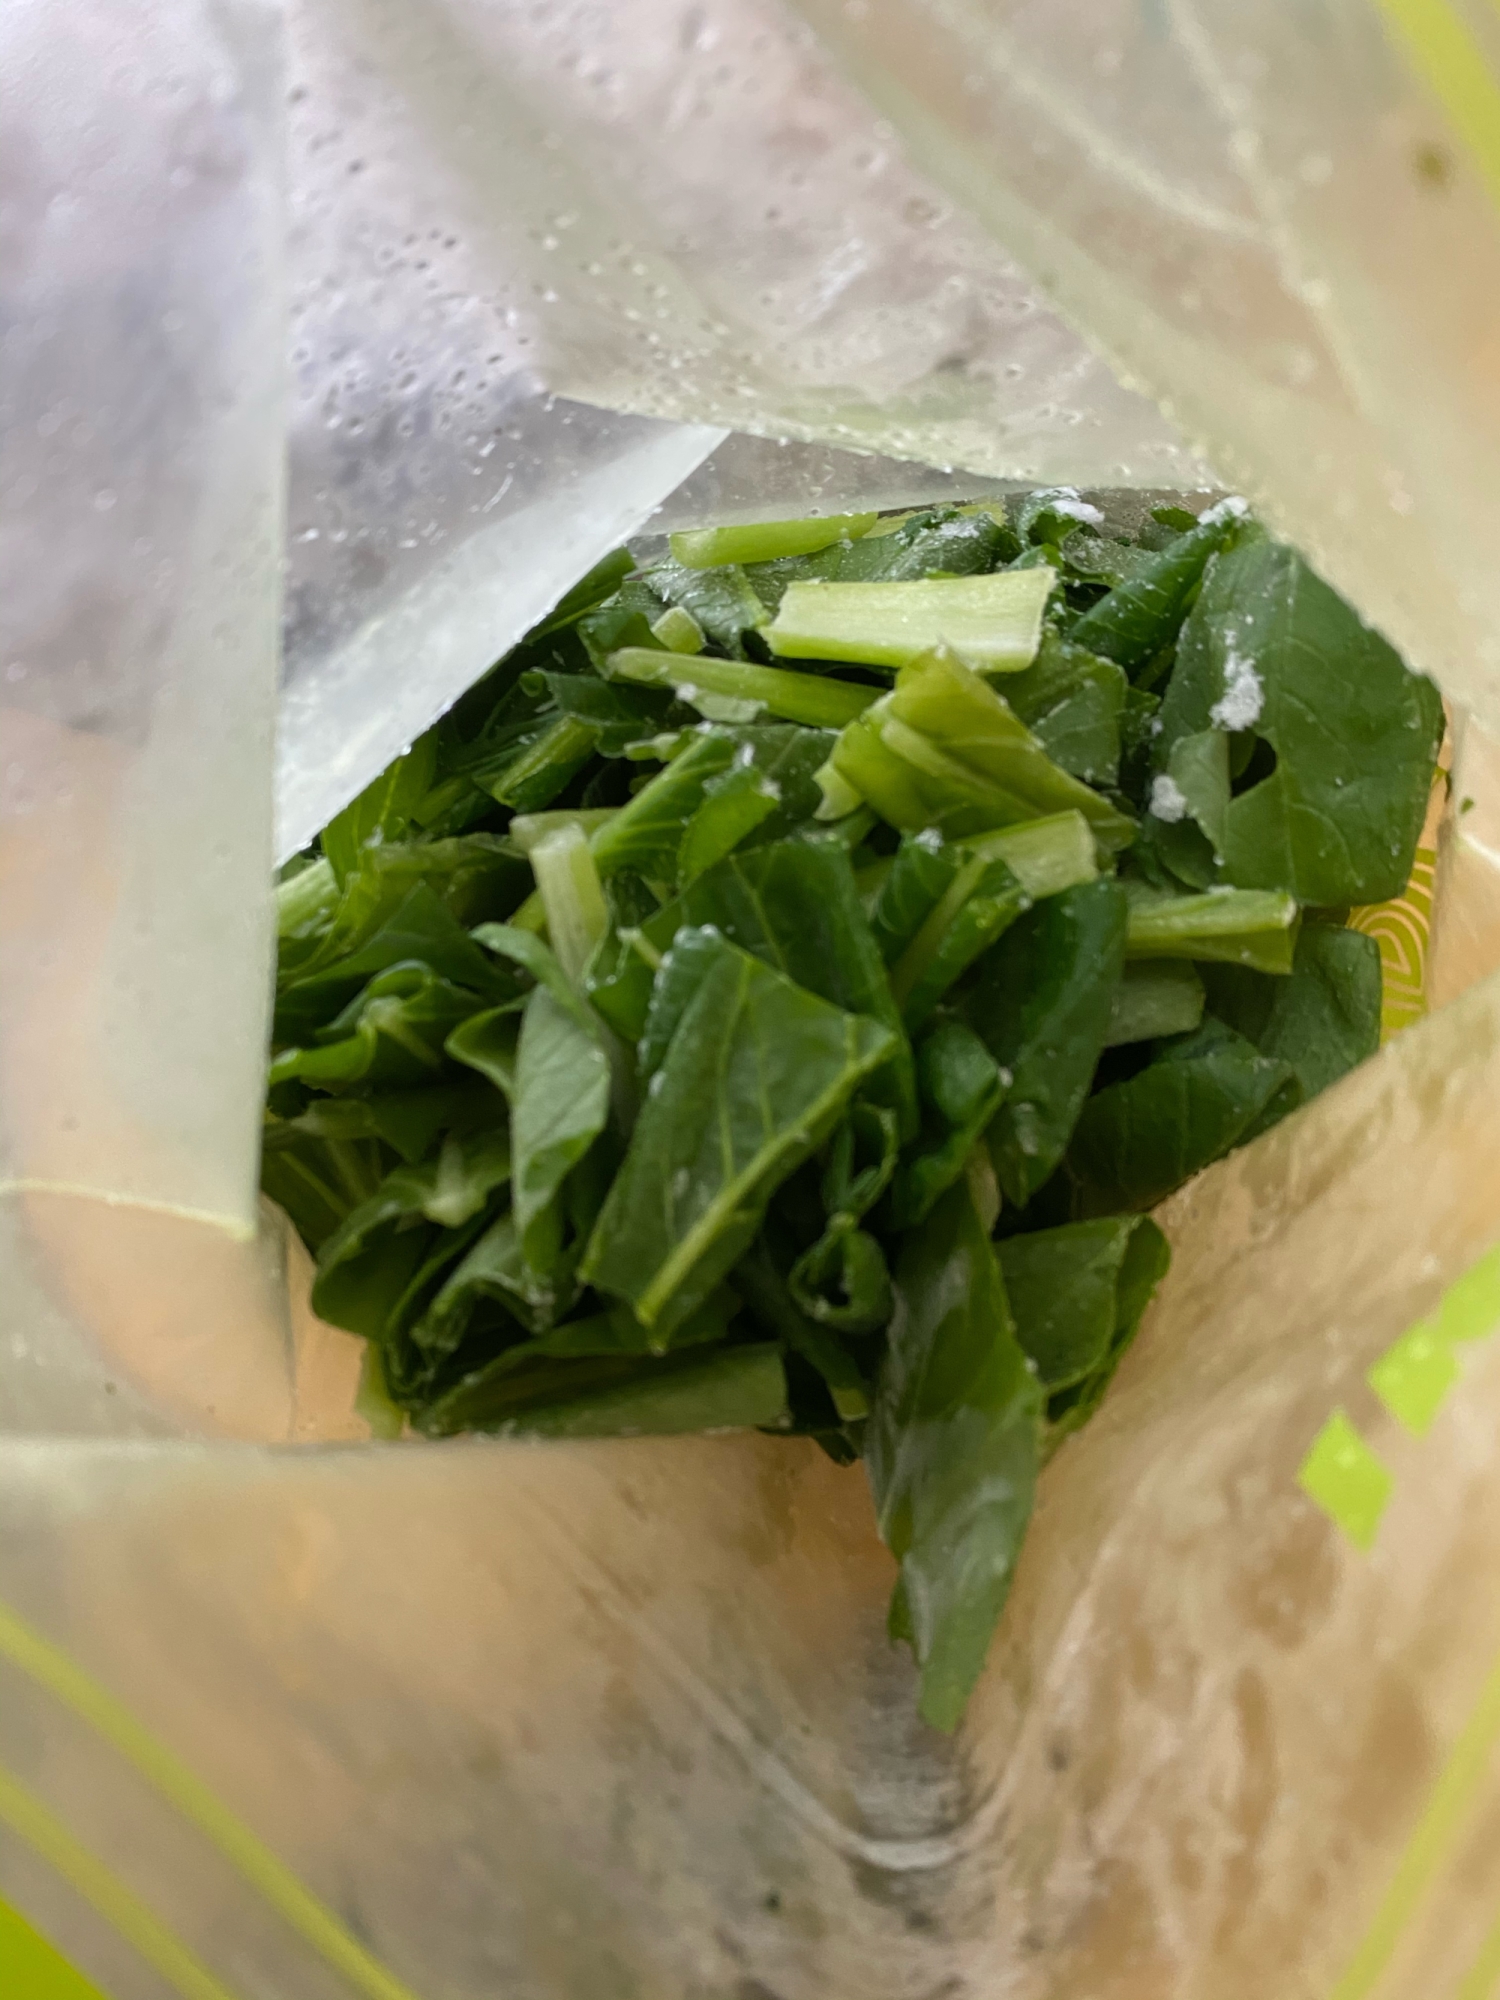 葉物野菜の冷凍